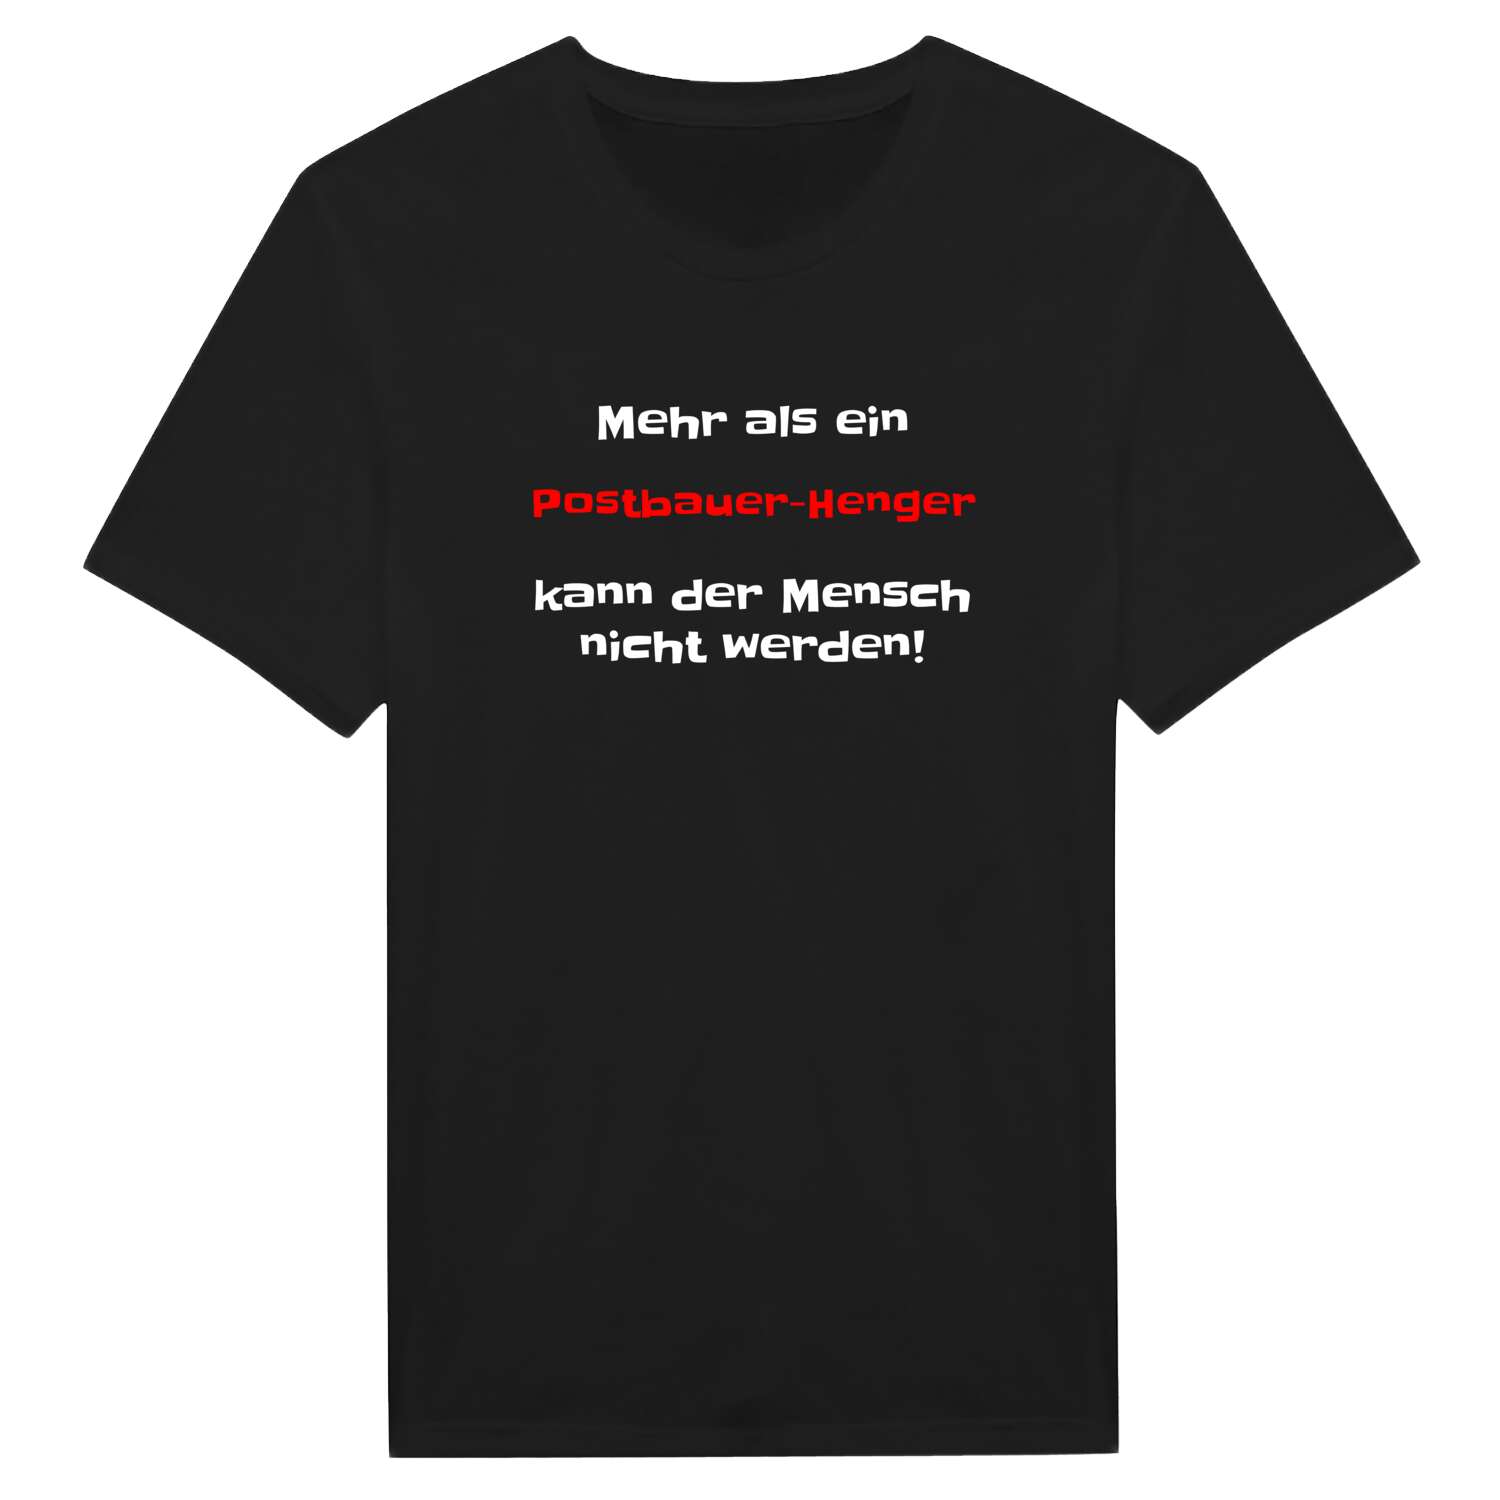 Postbauer-Heng T-Shirt »Mehr als ein«